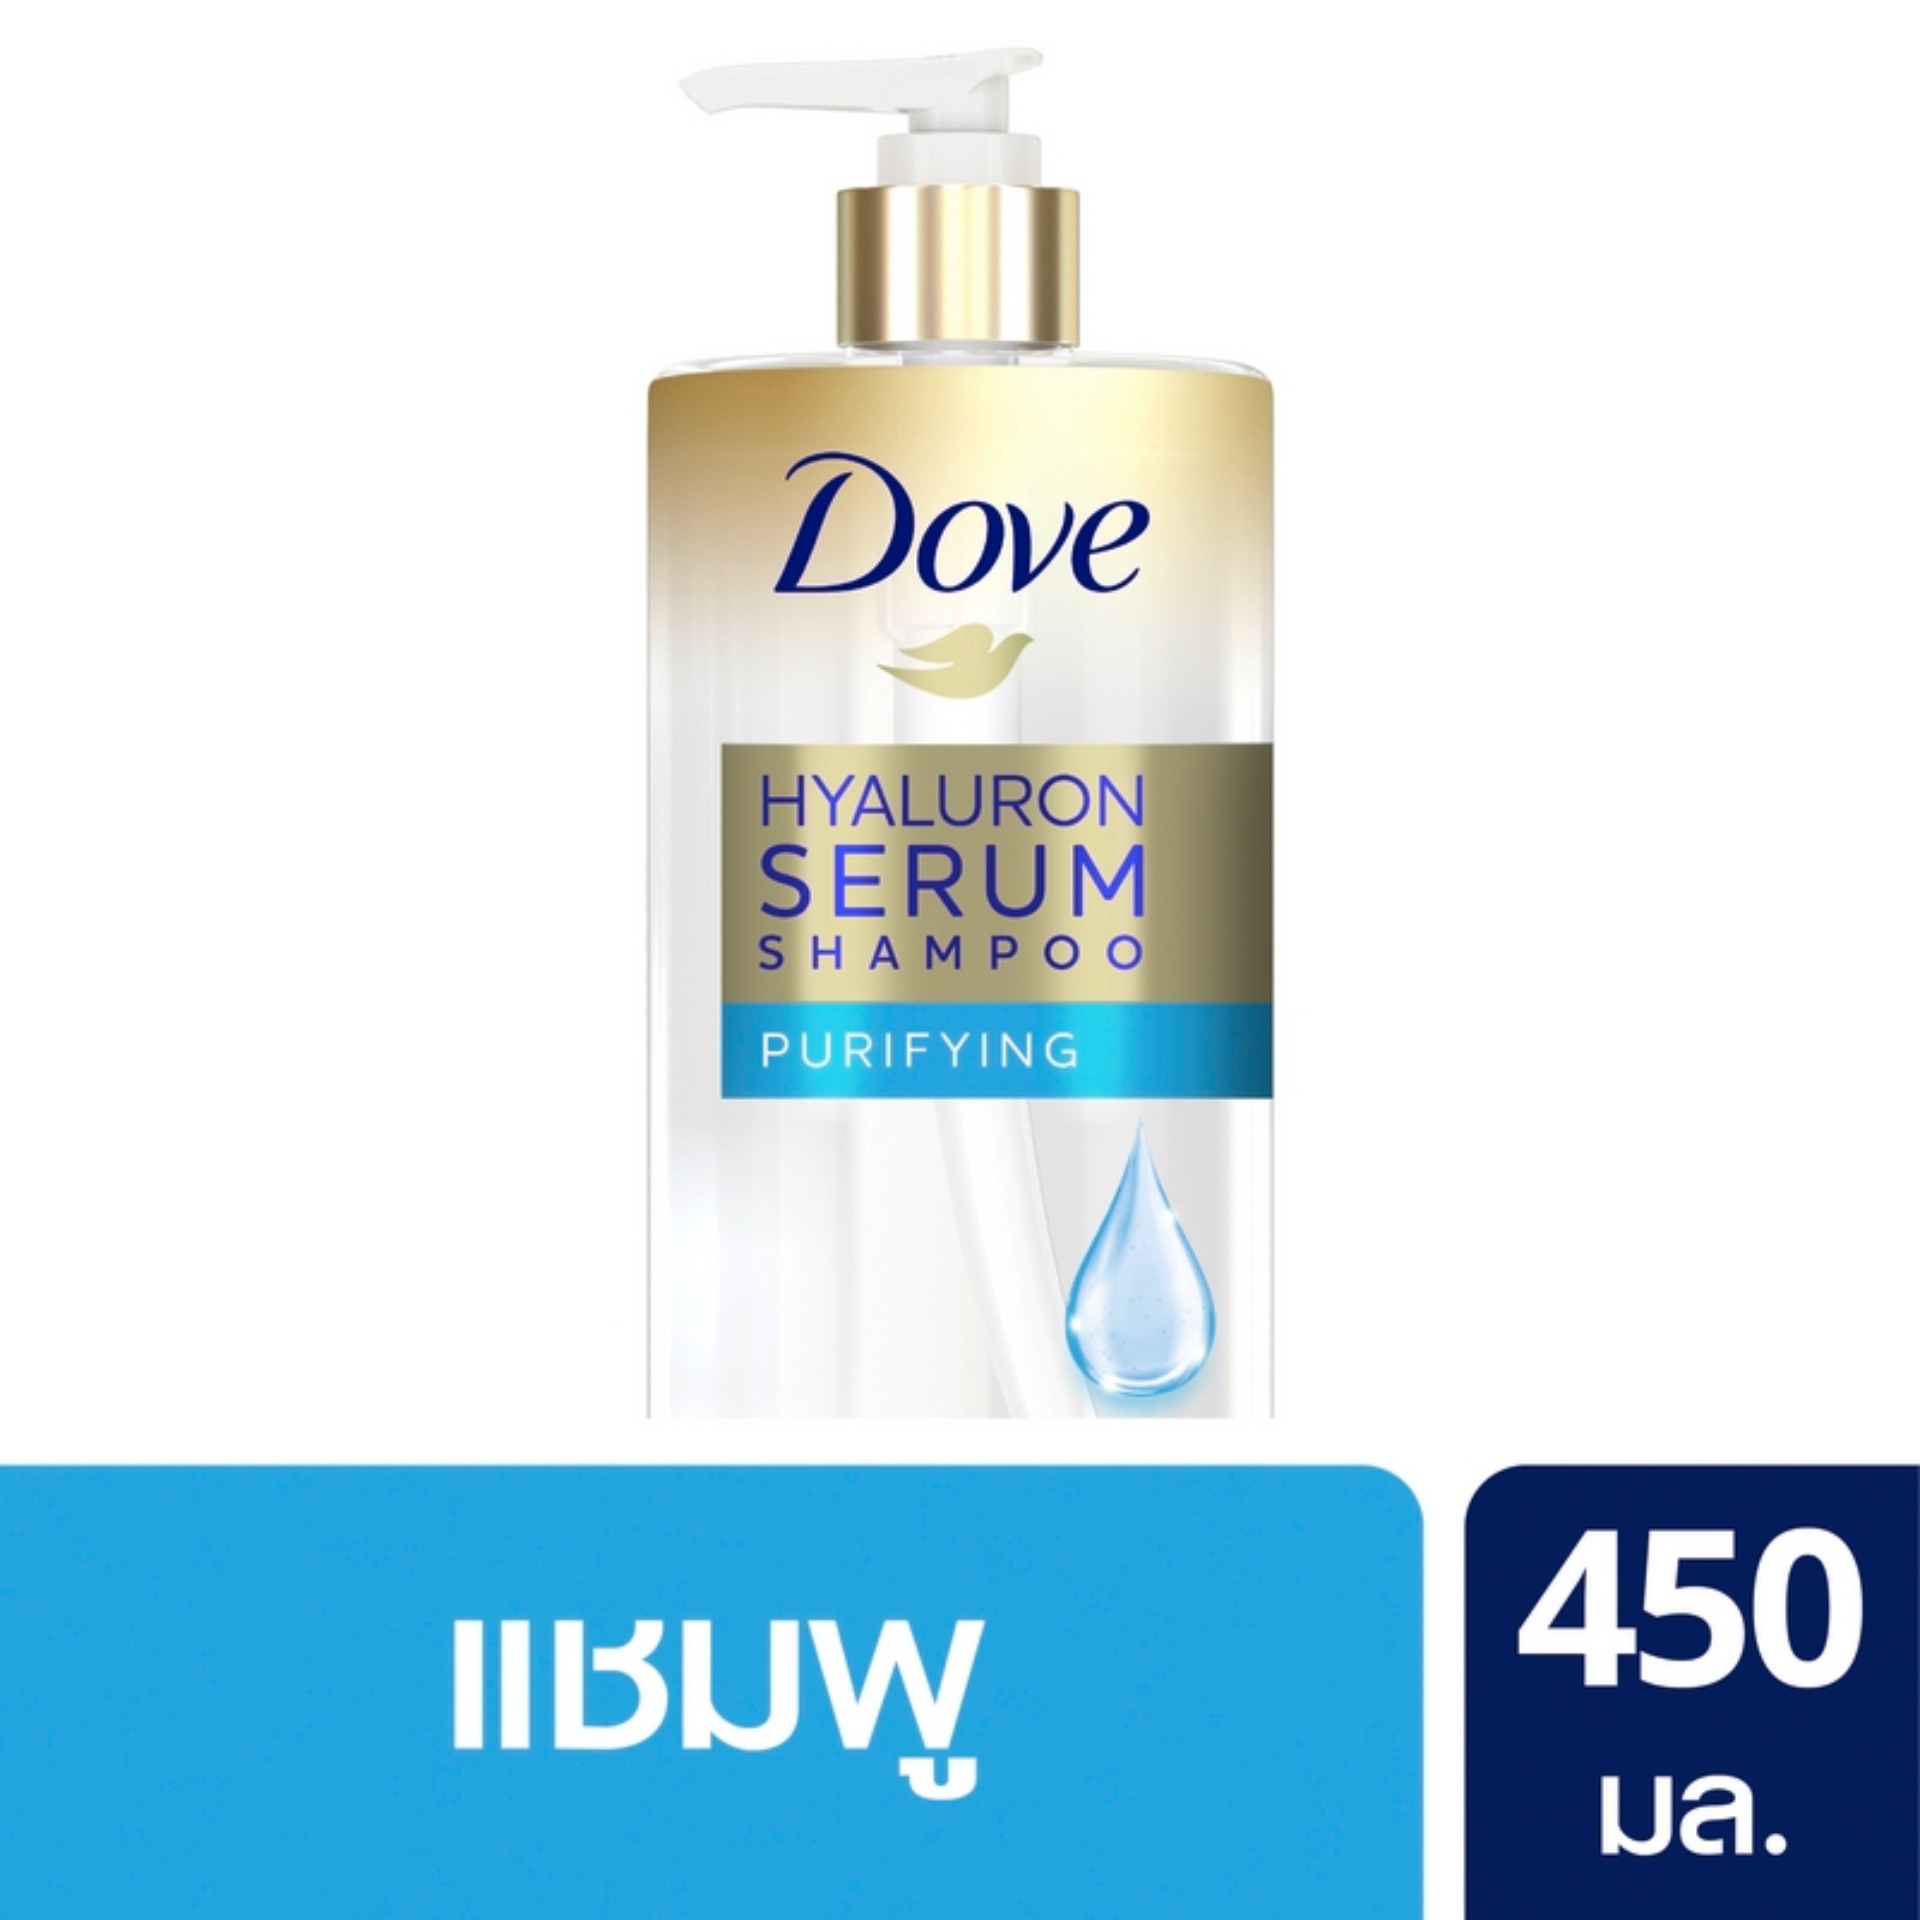 [ส่งฟรี] โดฟ ไฮยาลูรอน เซรั่ม เพียวริฟายอิ้ง แชมพู สีฟ้า ทำความสะอาดและคืนความชุ่มชื่น 450 มล. Dove Hyaluron Serum Shampoo Purifying 450 ml.( ยาสระผม ครีมสระผม แชมพู shampoo ) ของแท้